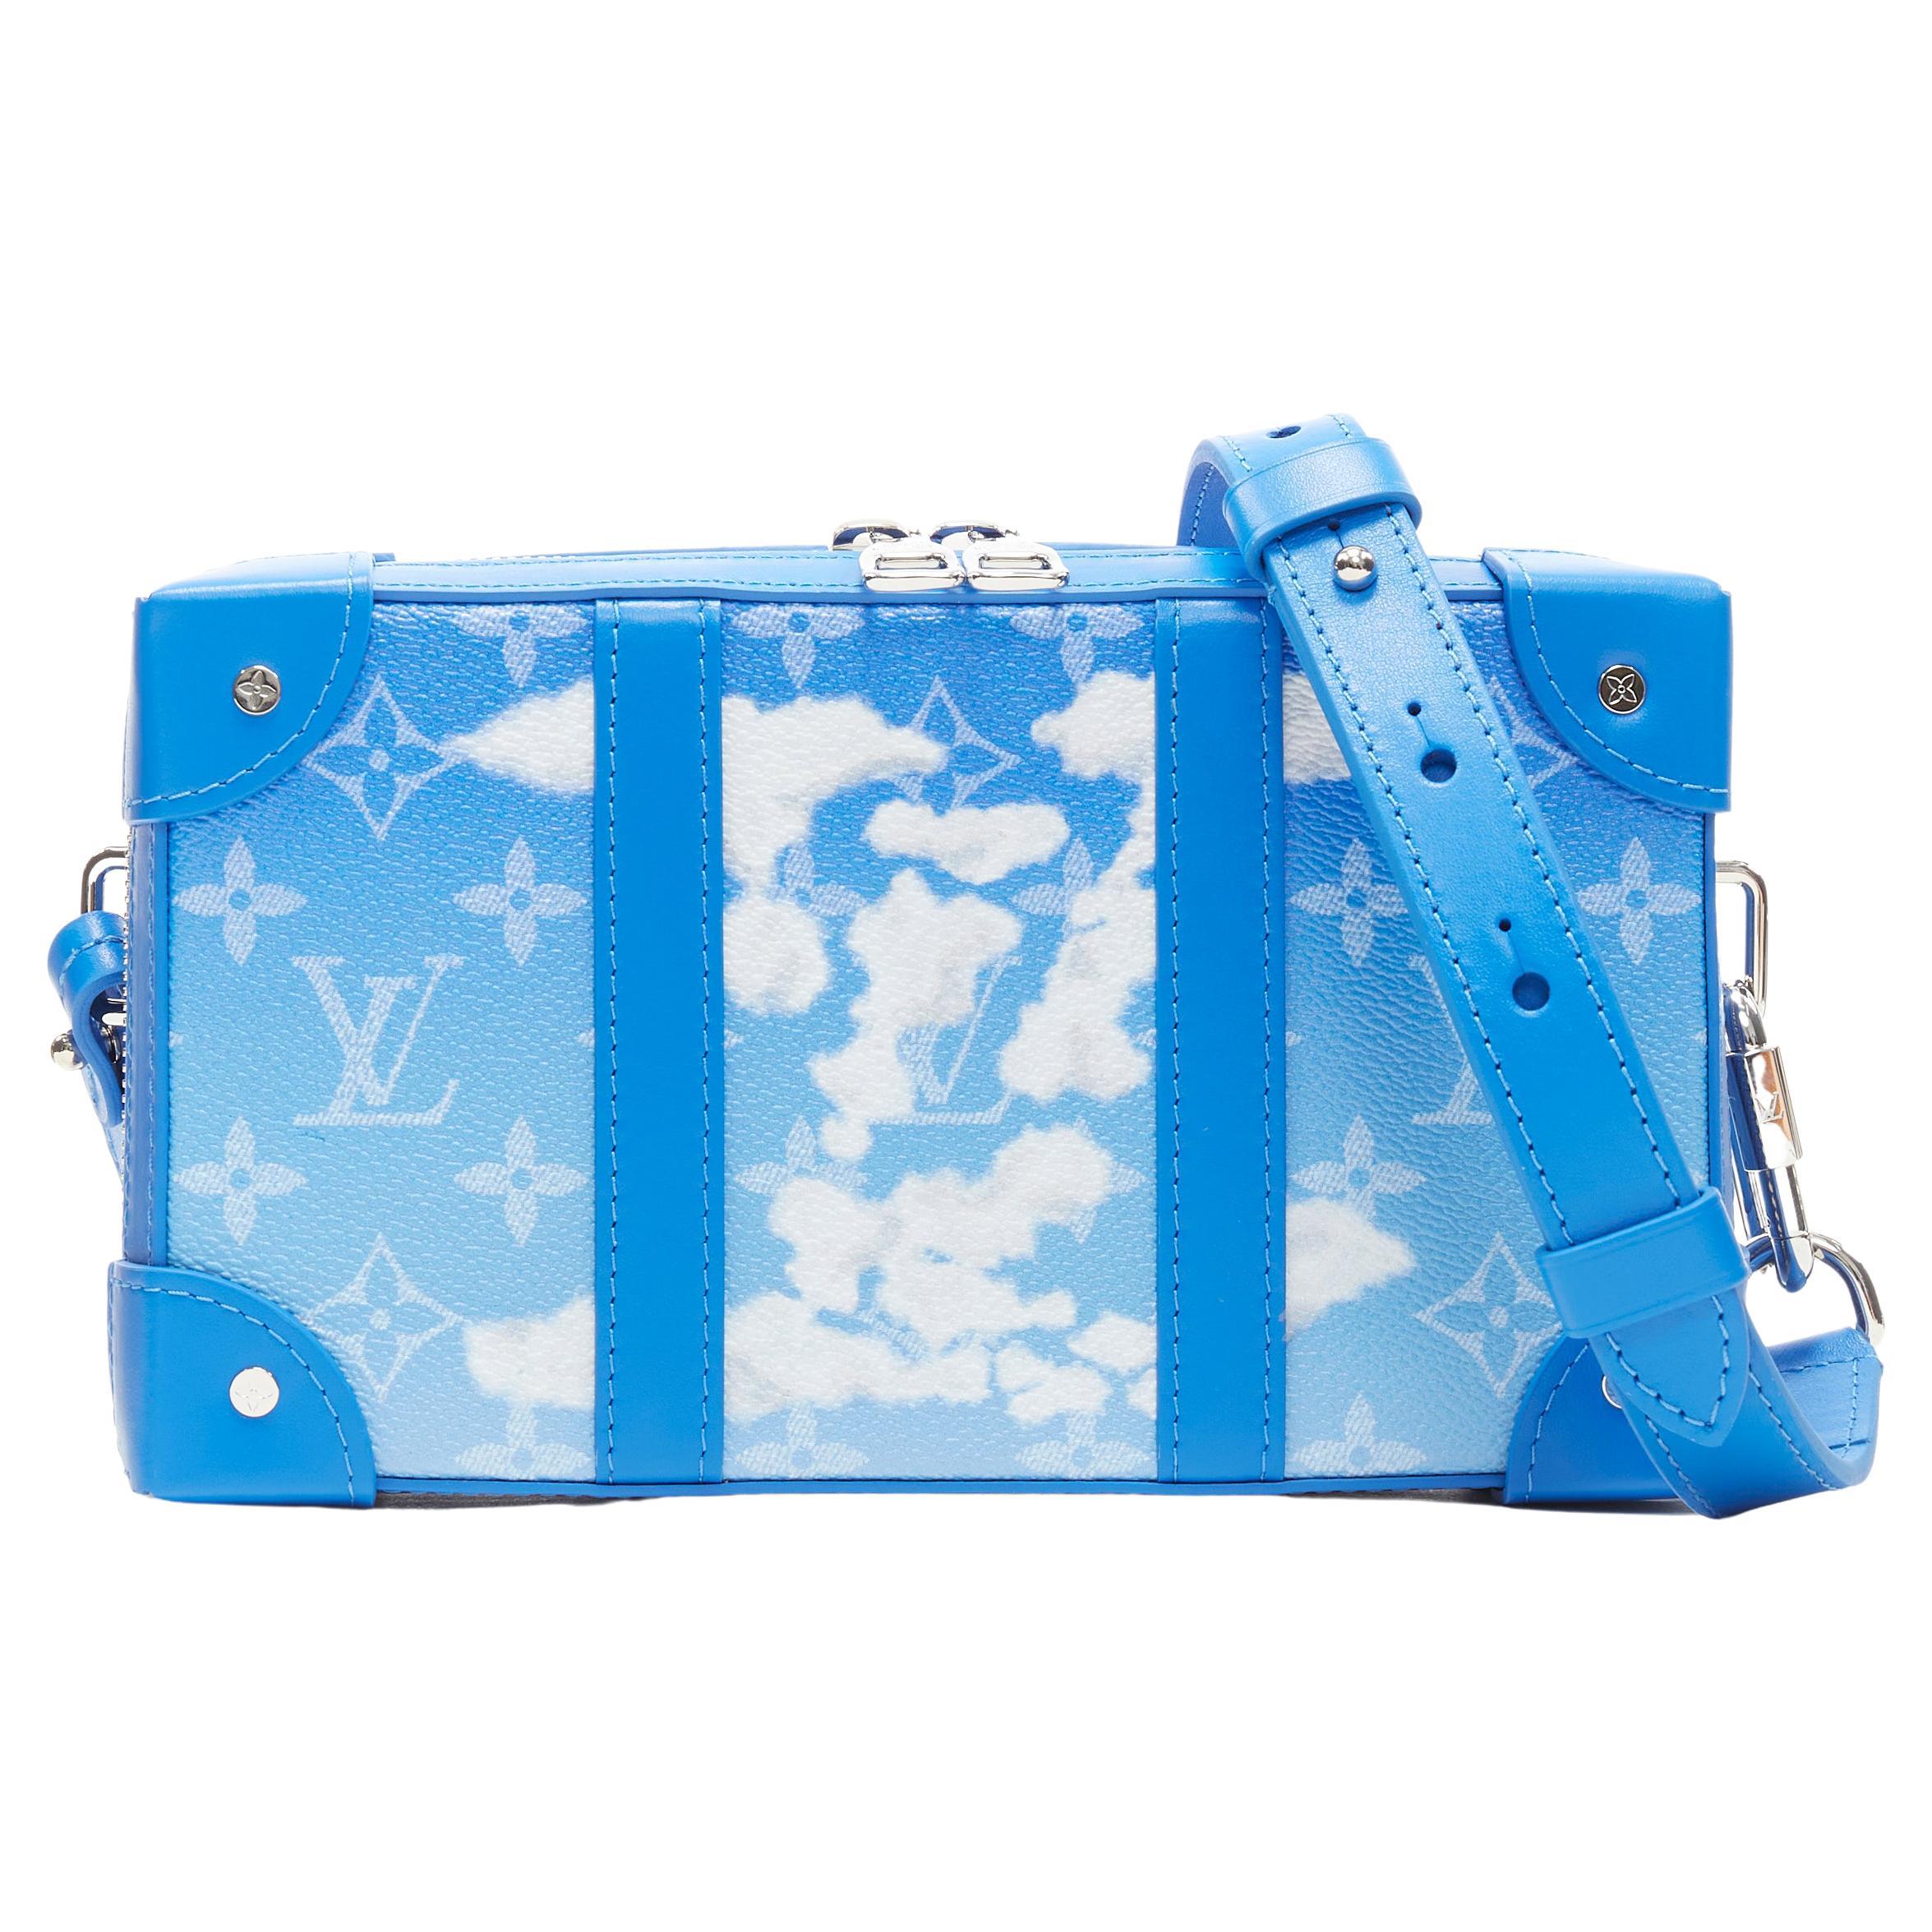 Louis Vuitton Cloud - 14 For Sale on 1stDibs | louis vuitton cloud 